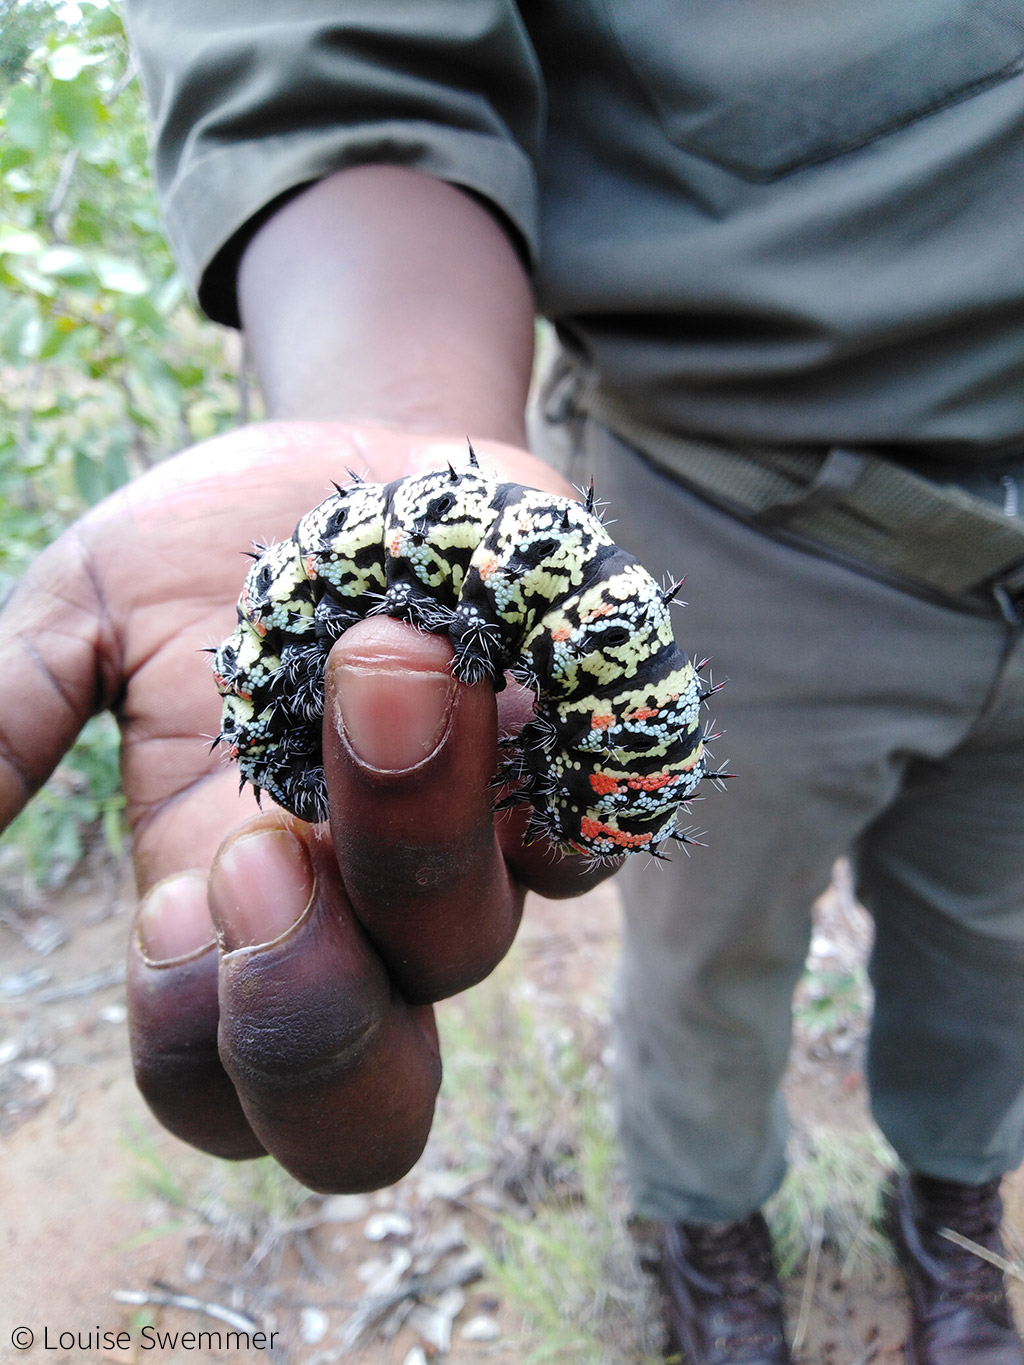 Mopane worms